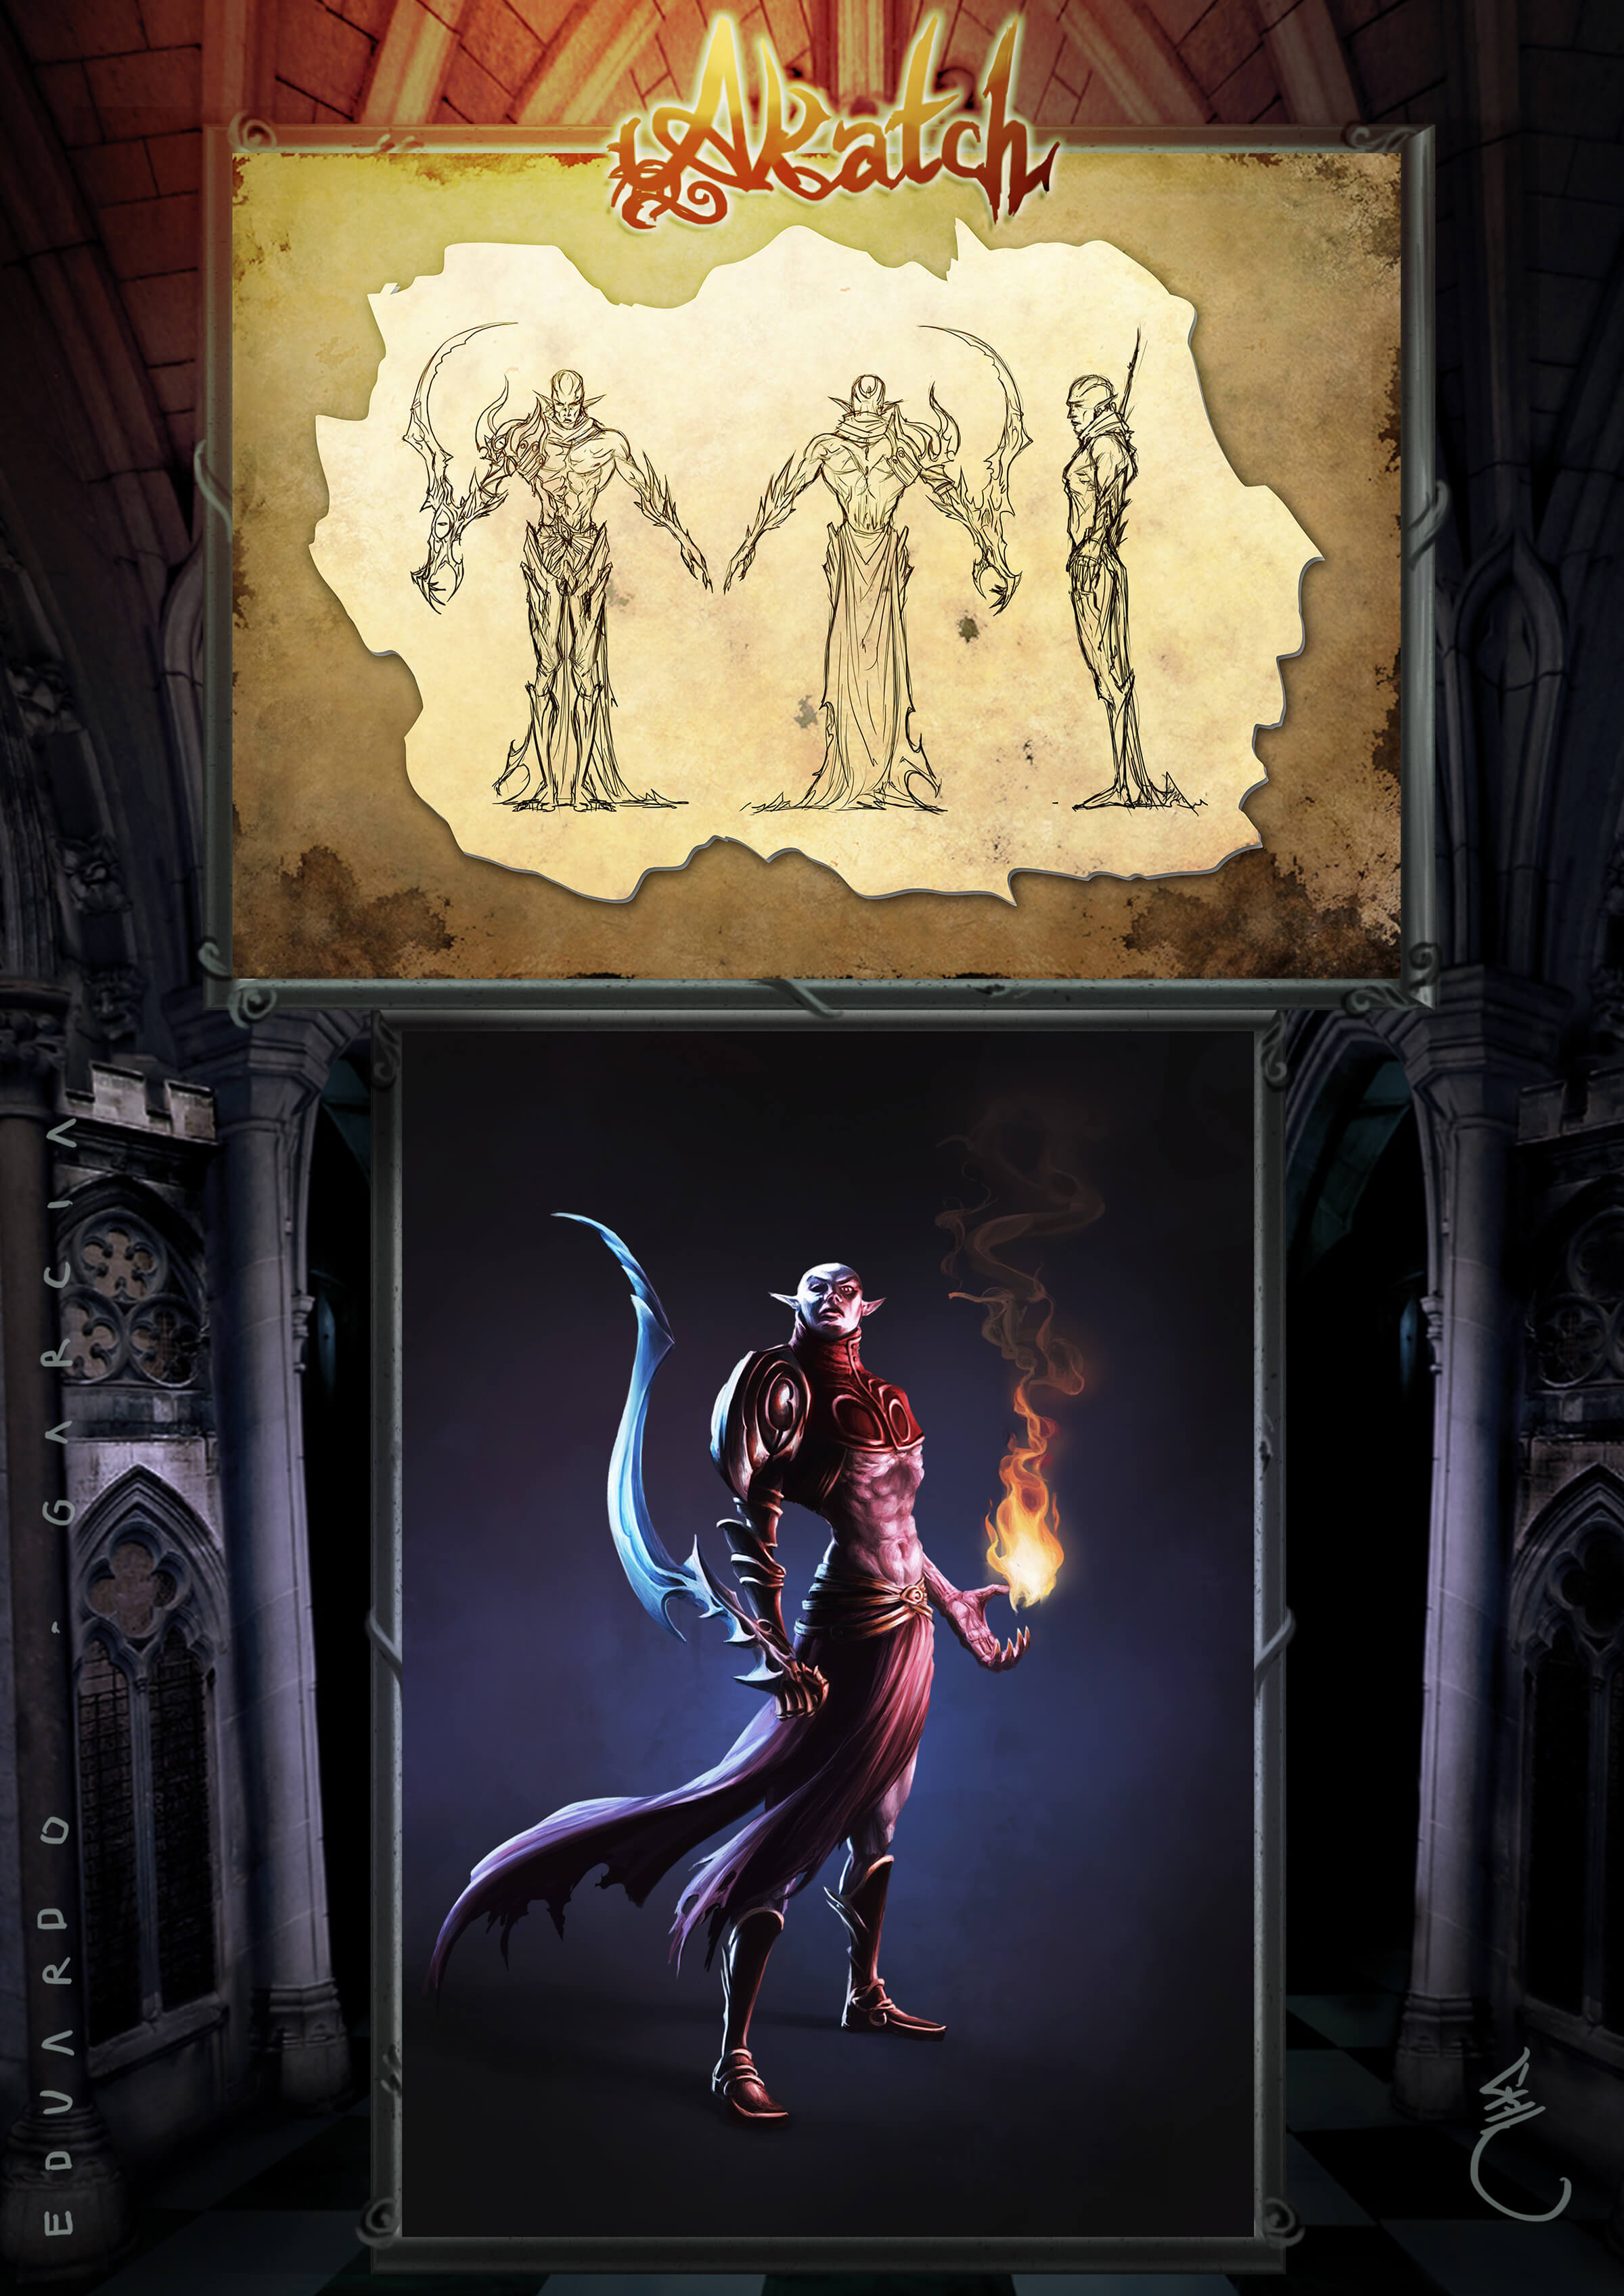 Una figura demoníaca se alza orgullosa con una espada curva y ornamentada en una mano y una bola de fuego en la otra.